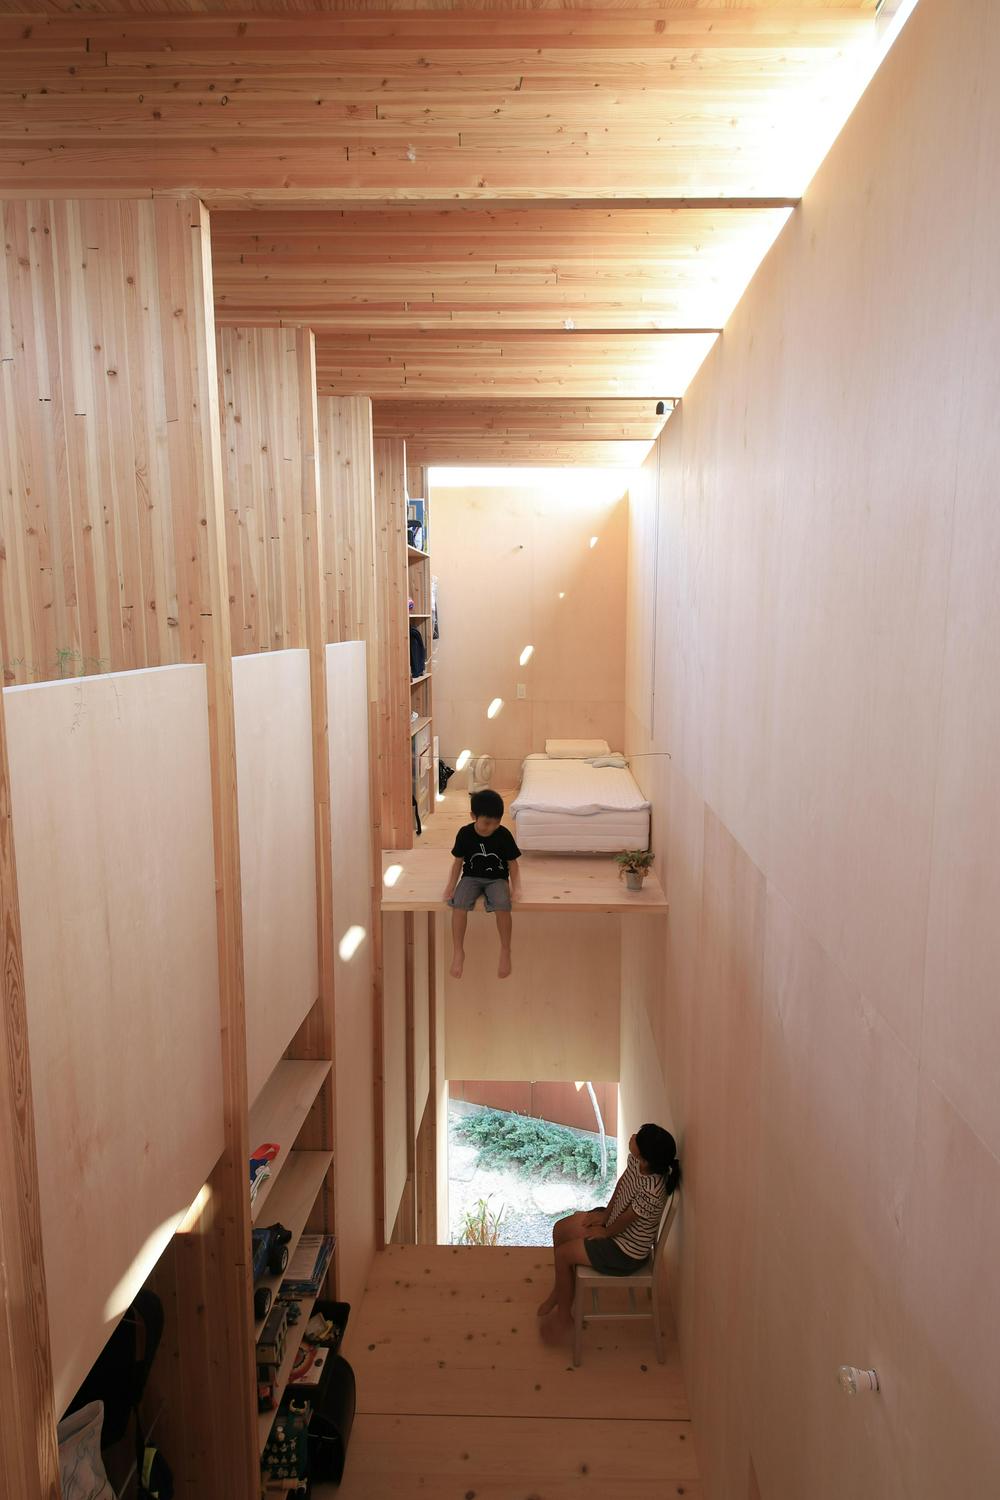 Image of "竪の家", the work by architect : Katsutoshi Sasaki (image number 7)